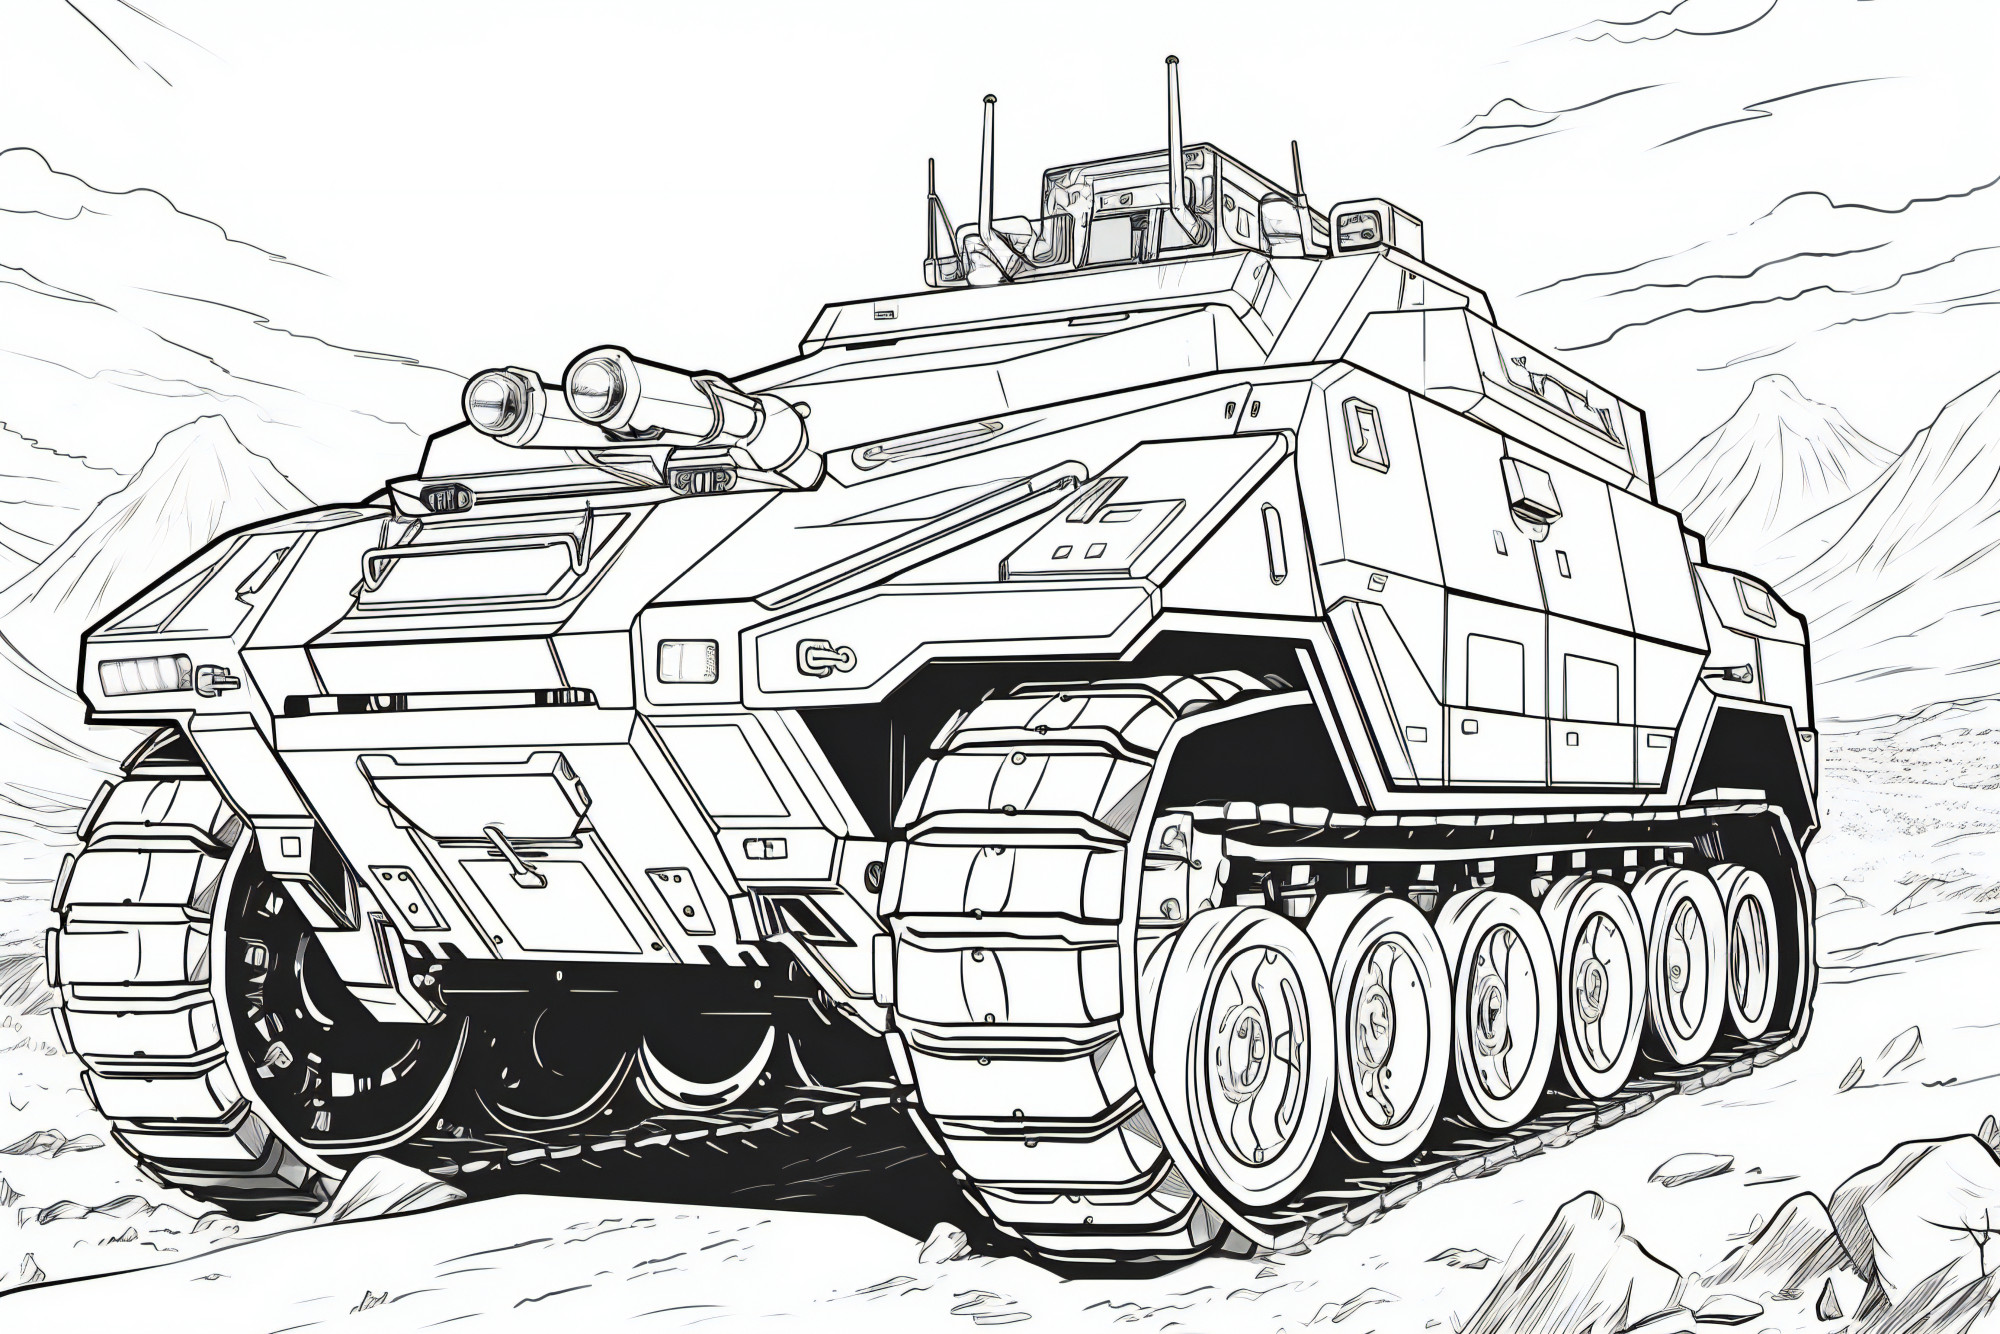 Раскраска для детей: танк «Огневой астероид»